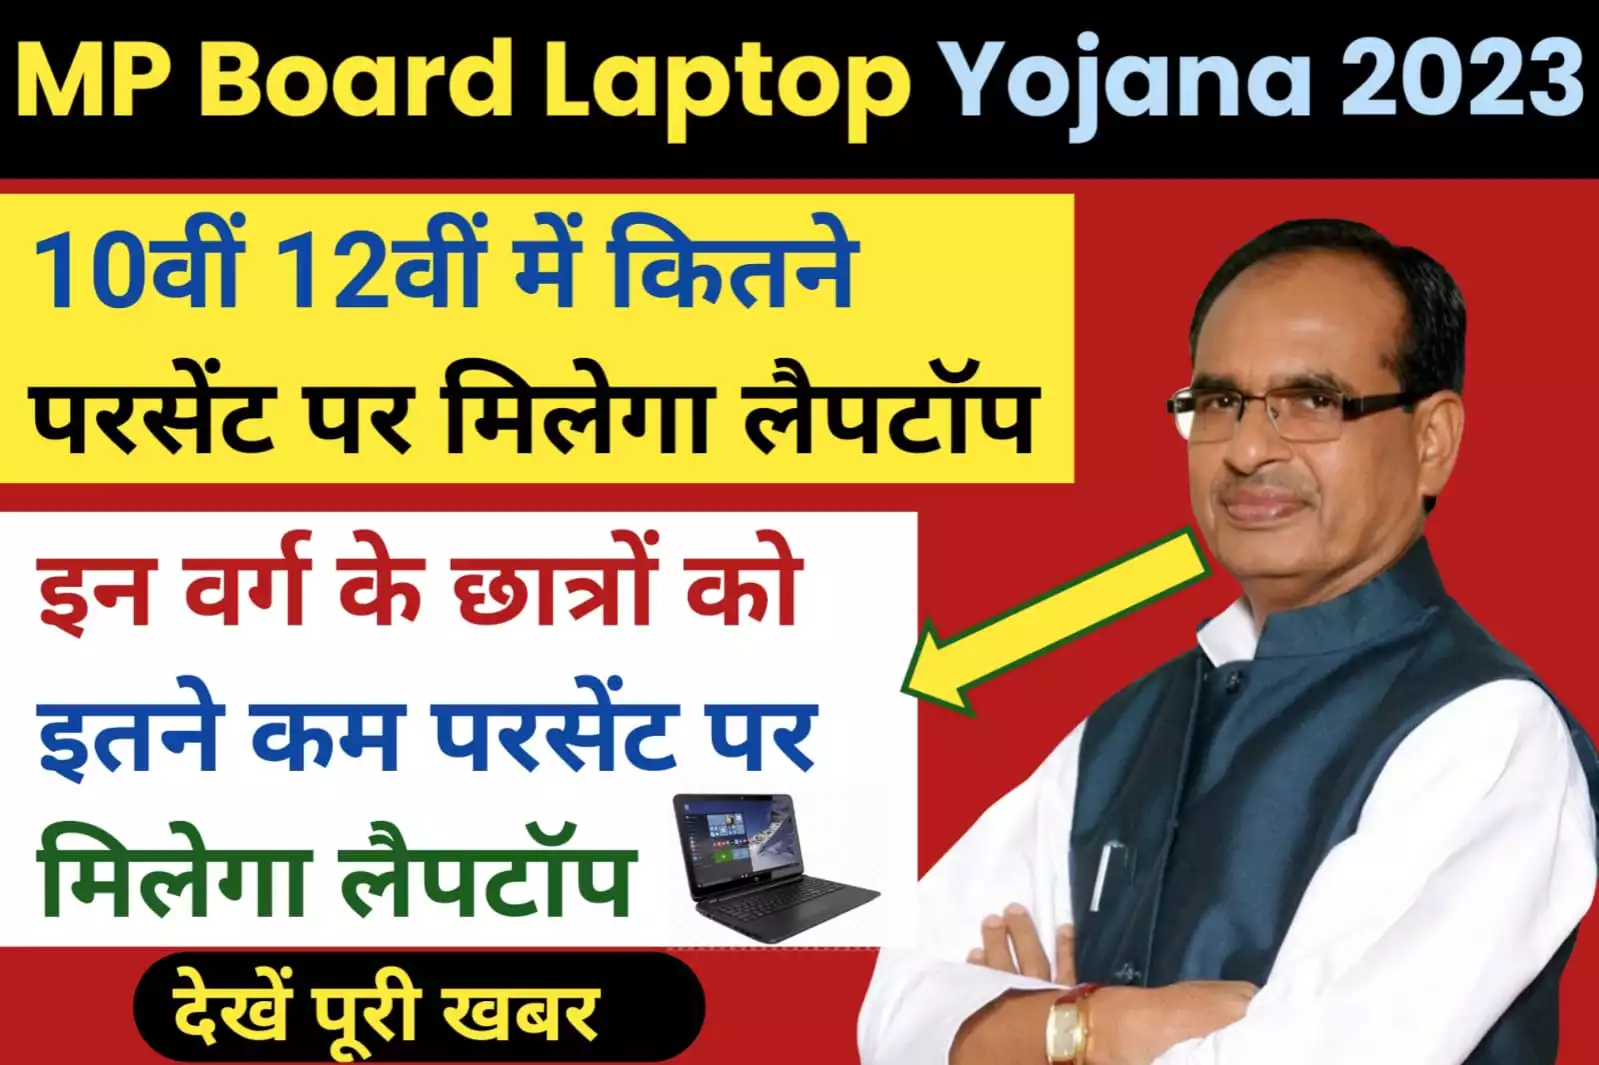 MP Board Laptop Yojana 2023